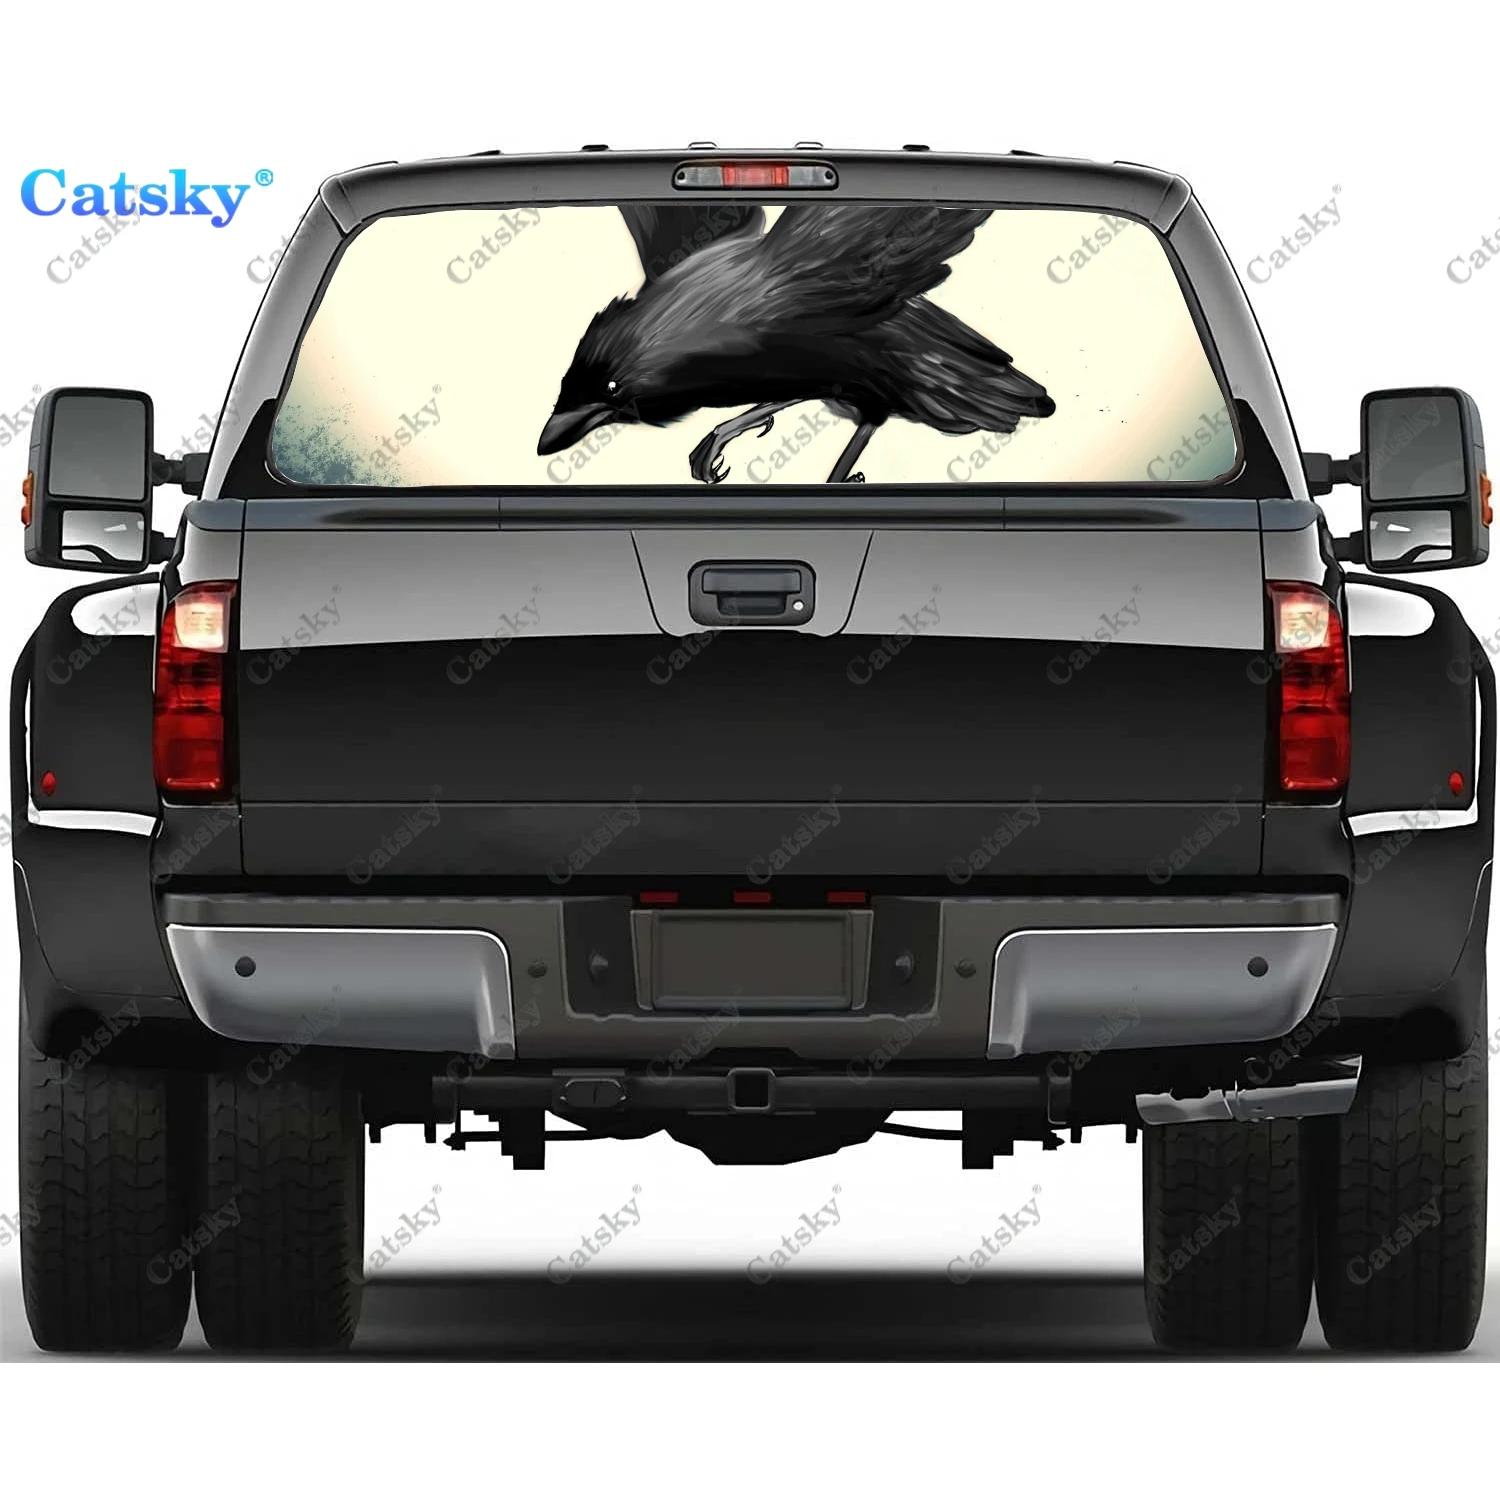 

Наклейки на заднее стекло с животными, птицами, вороном, для грузовика, наклейка на окно пикапа, ТИНТ заднего окна, графическая перфорированная виниловая наклейка для грузовика